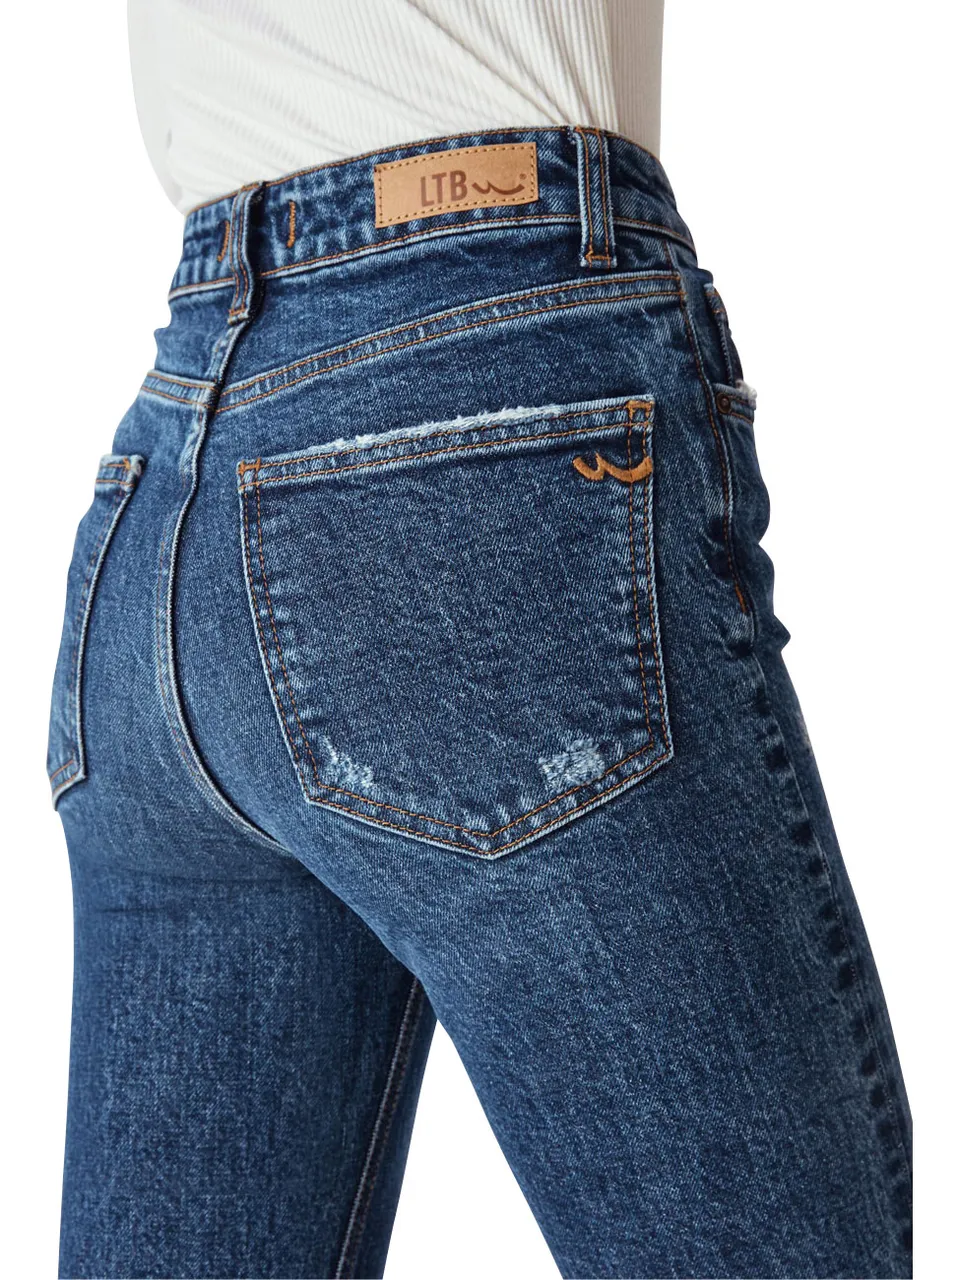 LTB Damen Jeans FREYA Slim Fit High Rise - Blau - Runa Undamaged Safe Wash